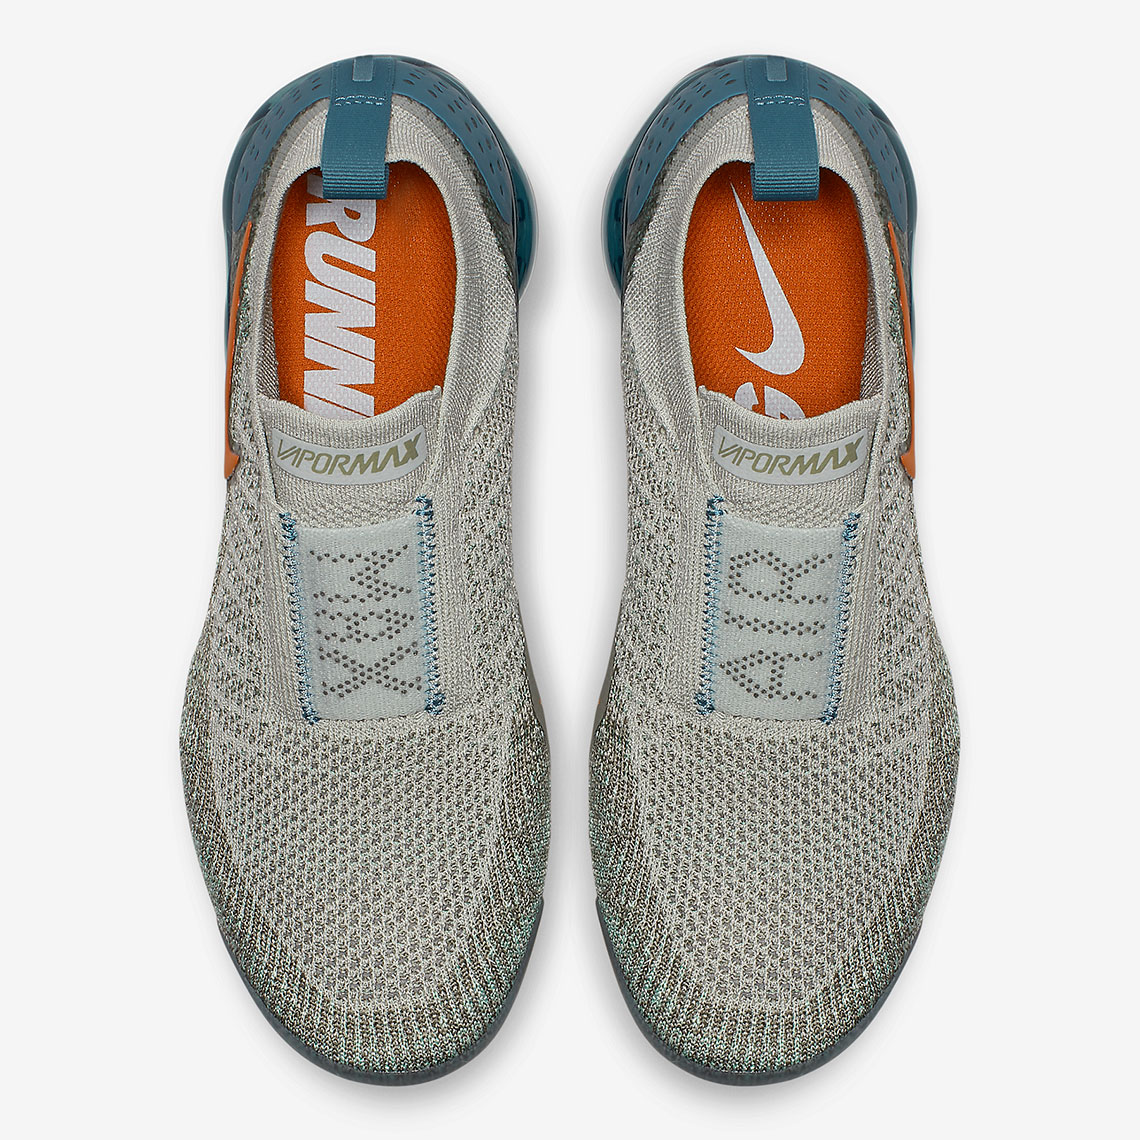 Nike Vapormax Moc 2 WMNS AJ6599-005 Release Info | SneakerNews.com